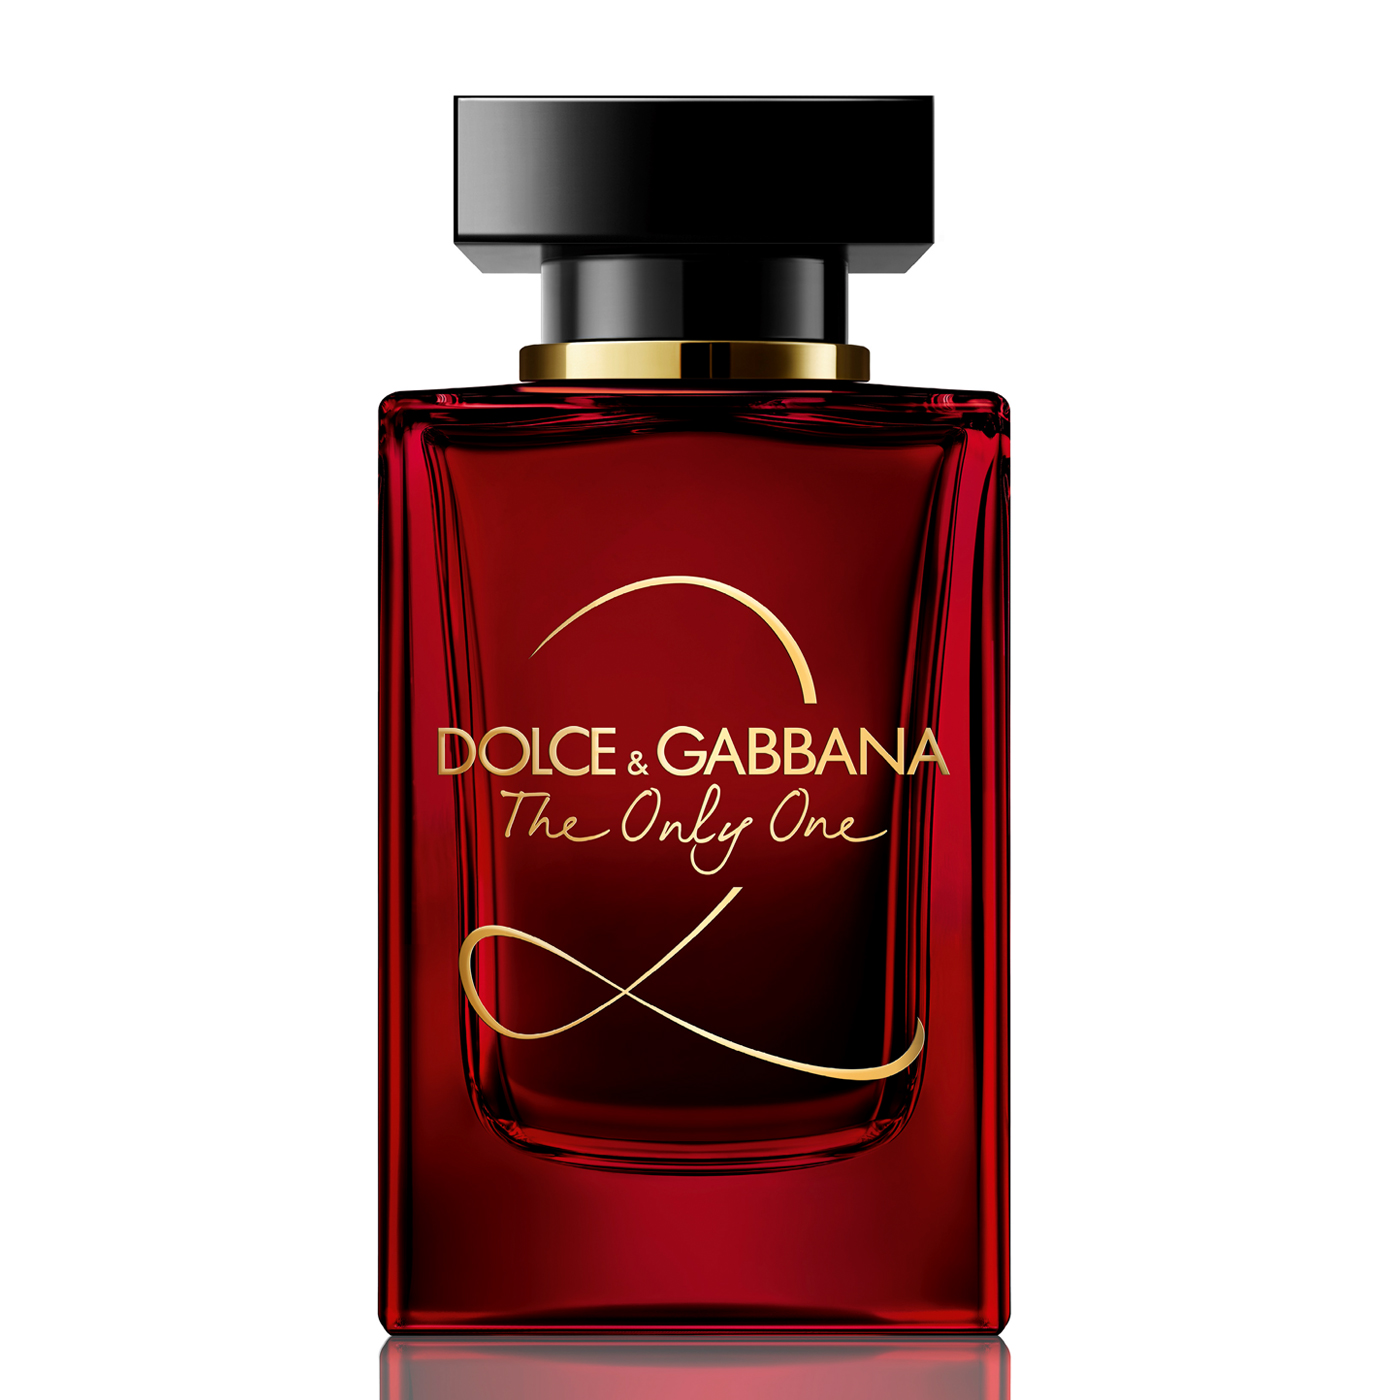 Купить Парфюмерная вода Dolce & Gabbana, Dolce & Gabbana The Only One 2 100ml тестер, Италия